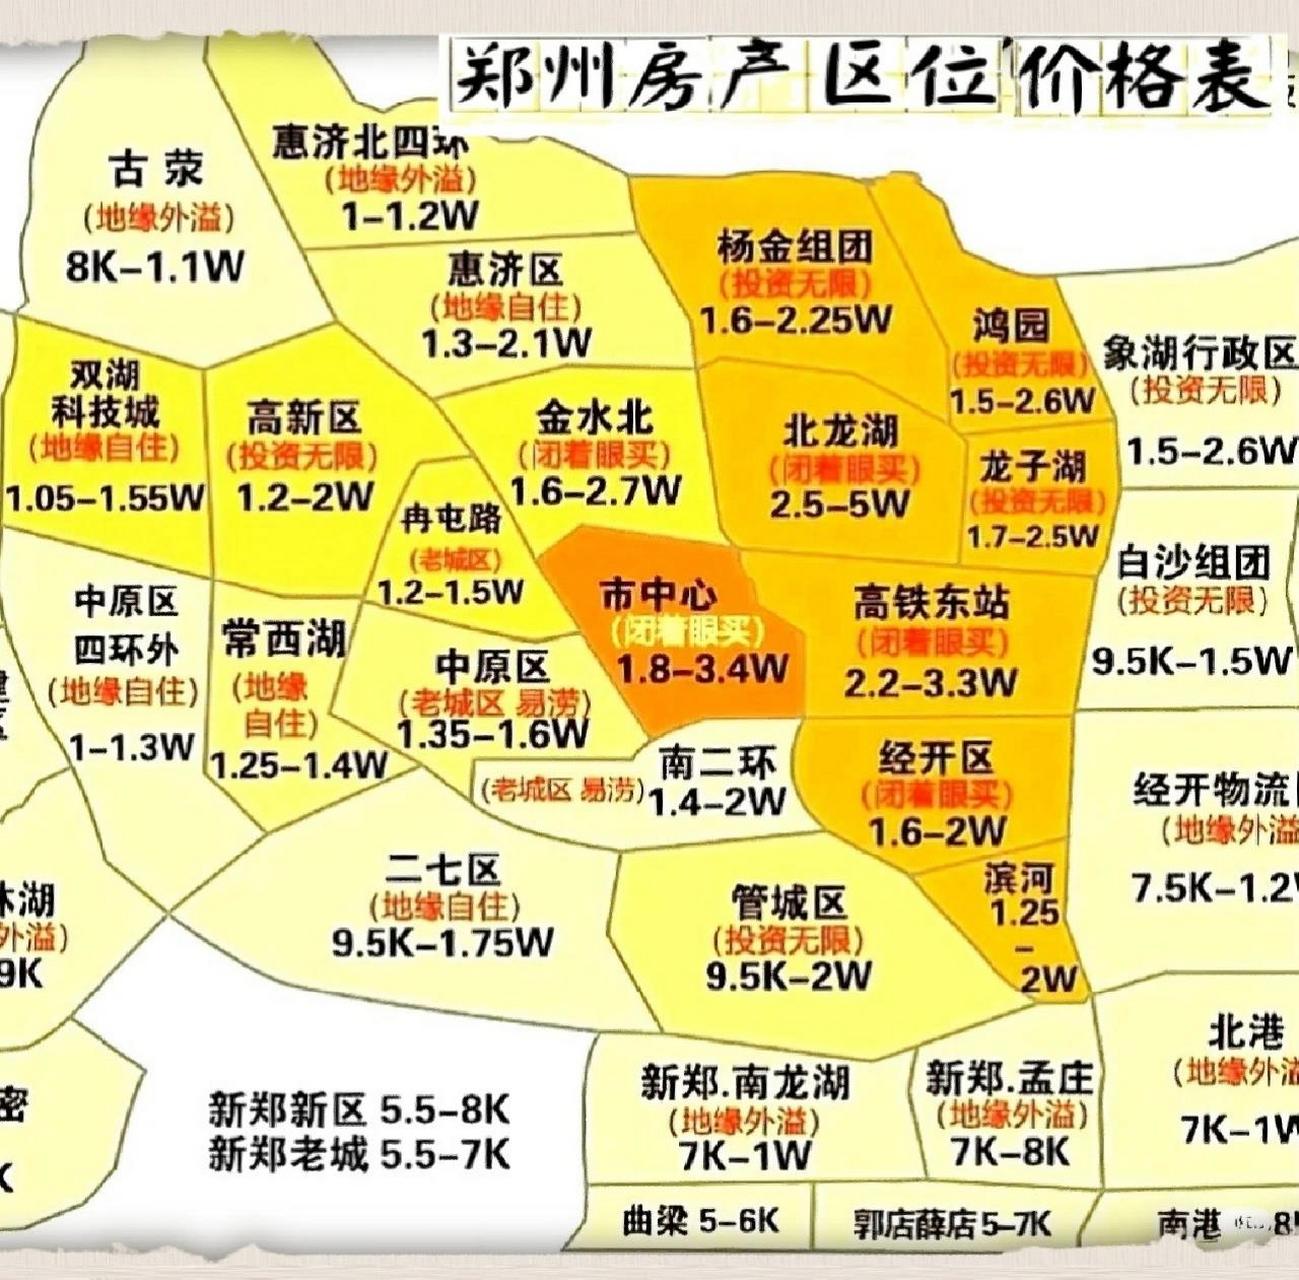 郑州房产分布区域图图片